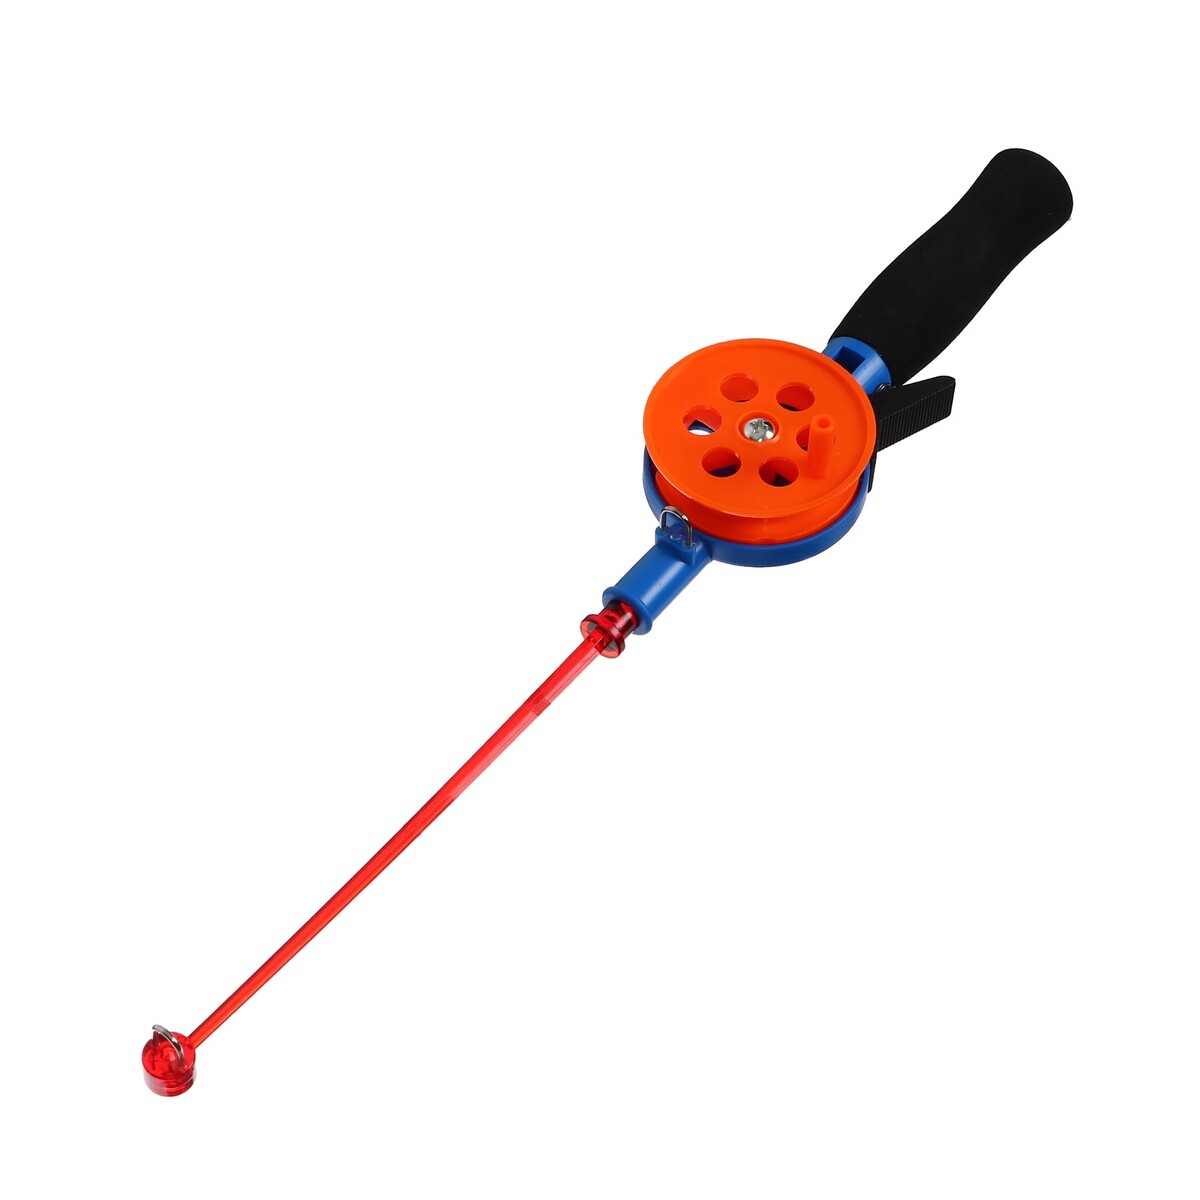 Удочка зимняя, ручка неопрен, длина 33 см, цвет оранжевый, hfb-34 удочка зимняя пластик с неопреновой ручкой 40 см